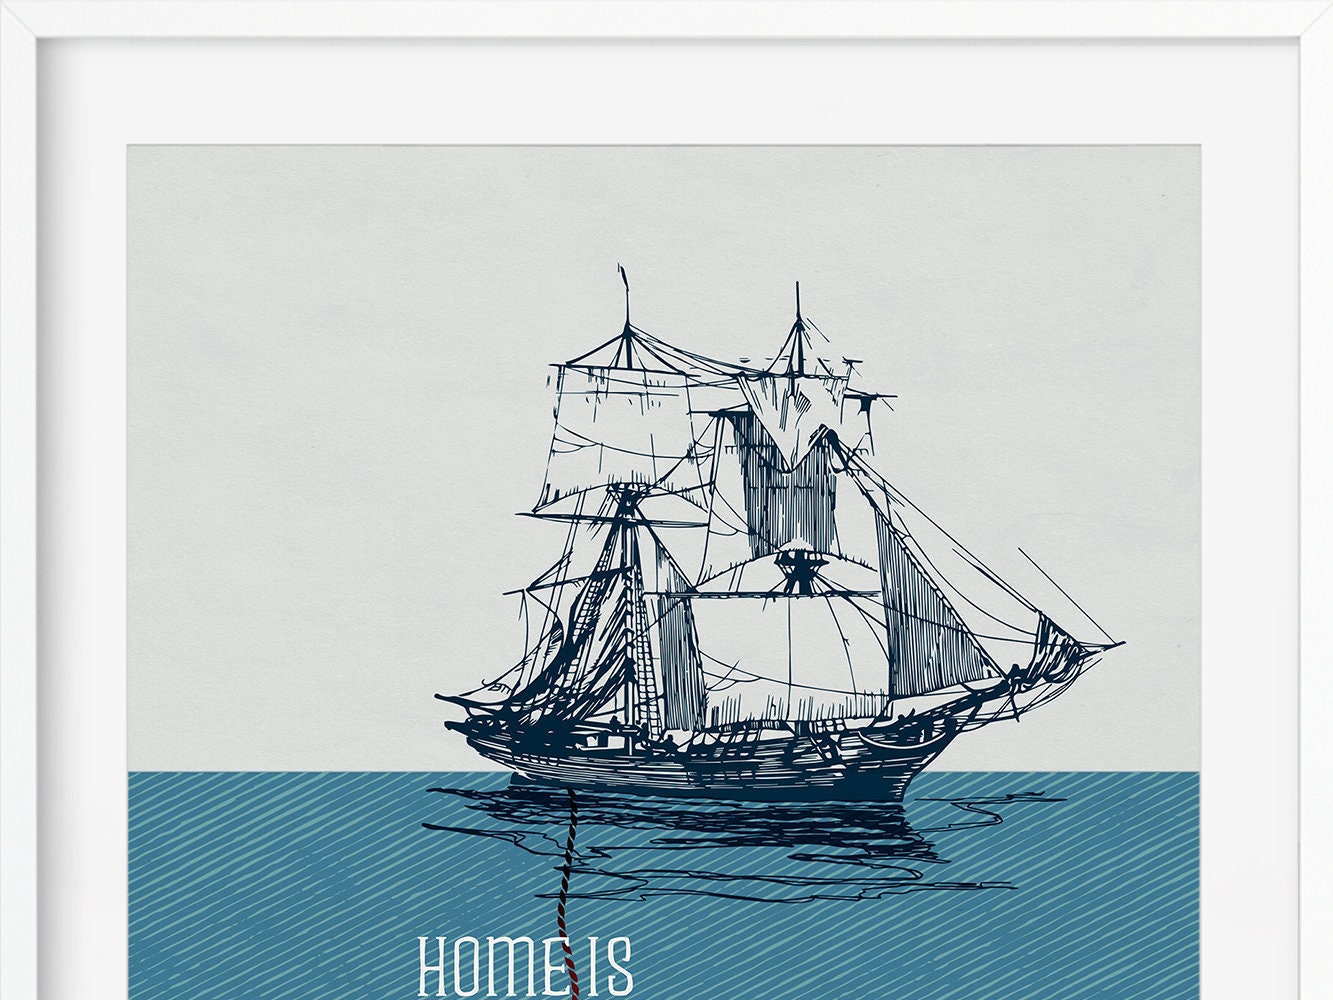 DRUCK ›HOME IS where the anchor drops‹ / Wanddeko, Art Print, Gastgeschenk Poster, Umzug, Einzug, kleines Geschenk, Schiff, Anker, Quote